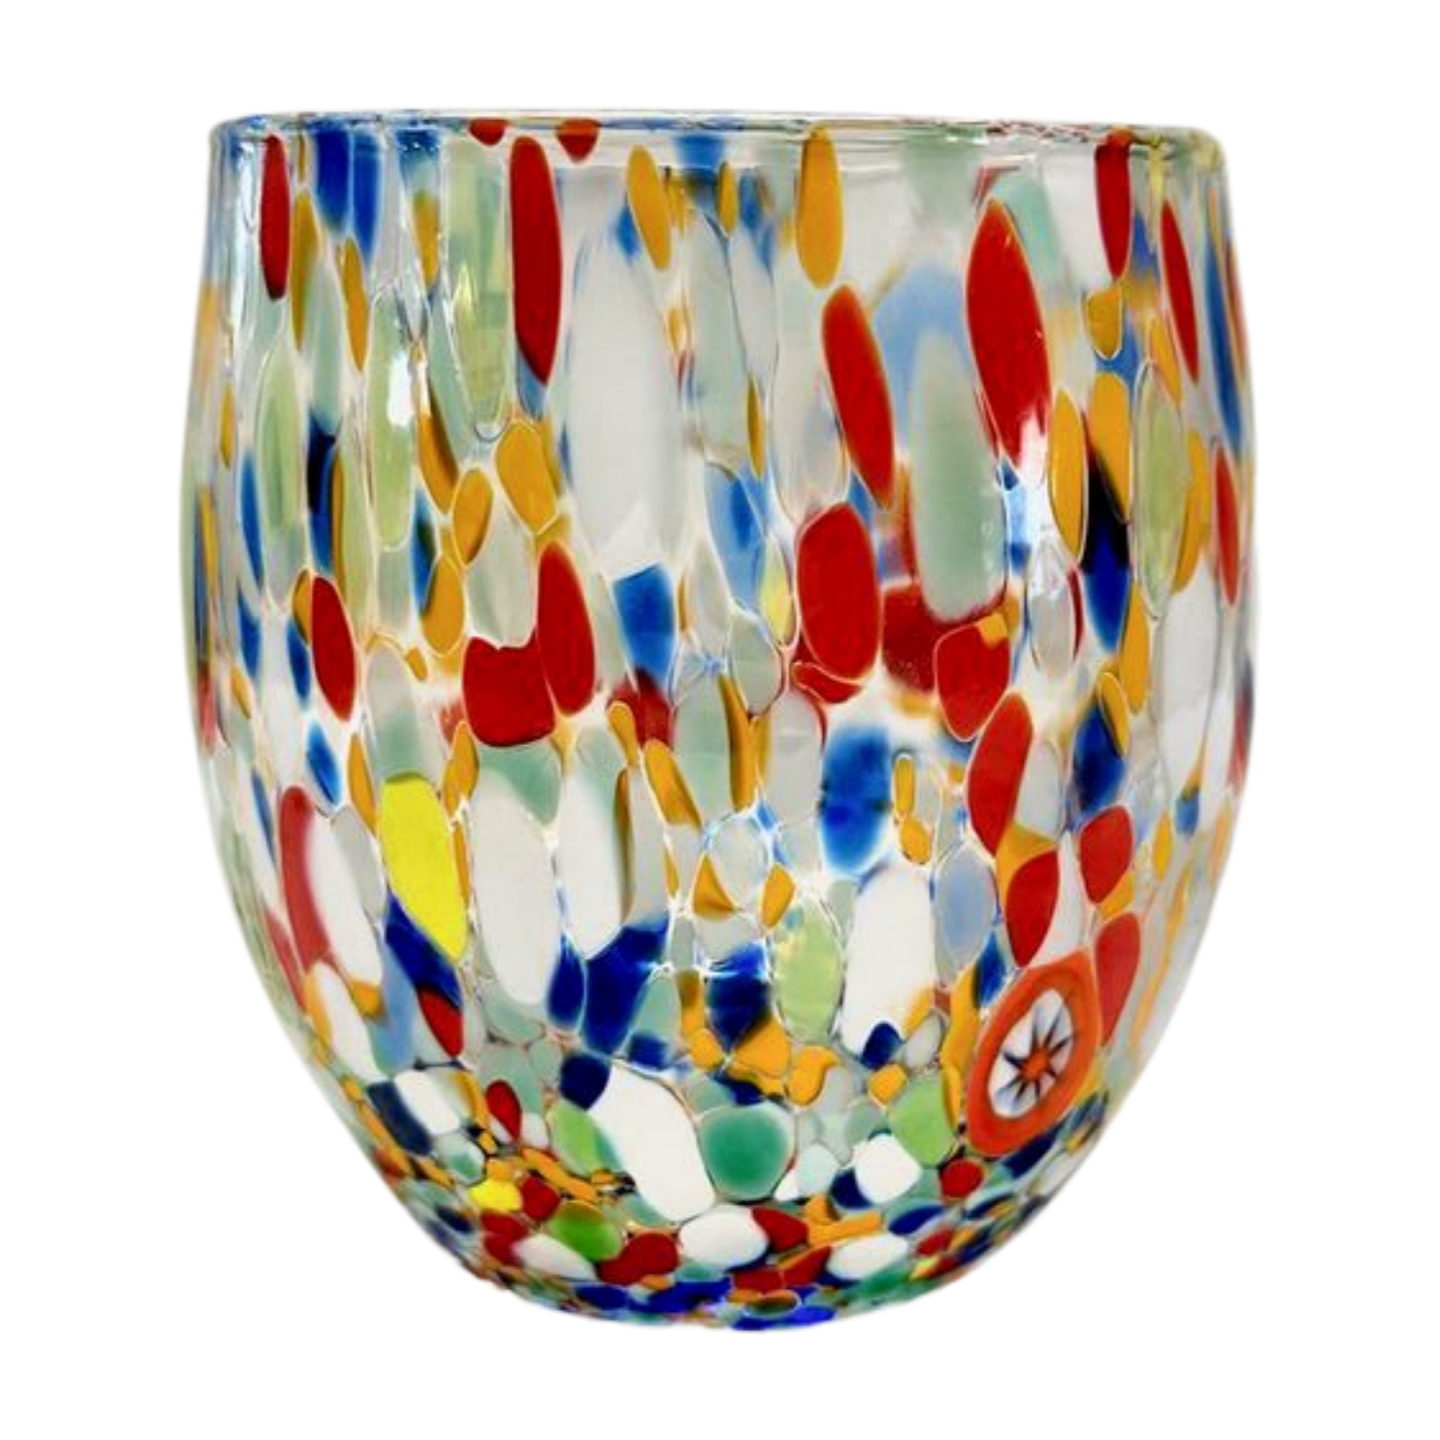 Stemless Murano wine glass in multicolor design.